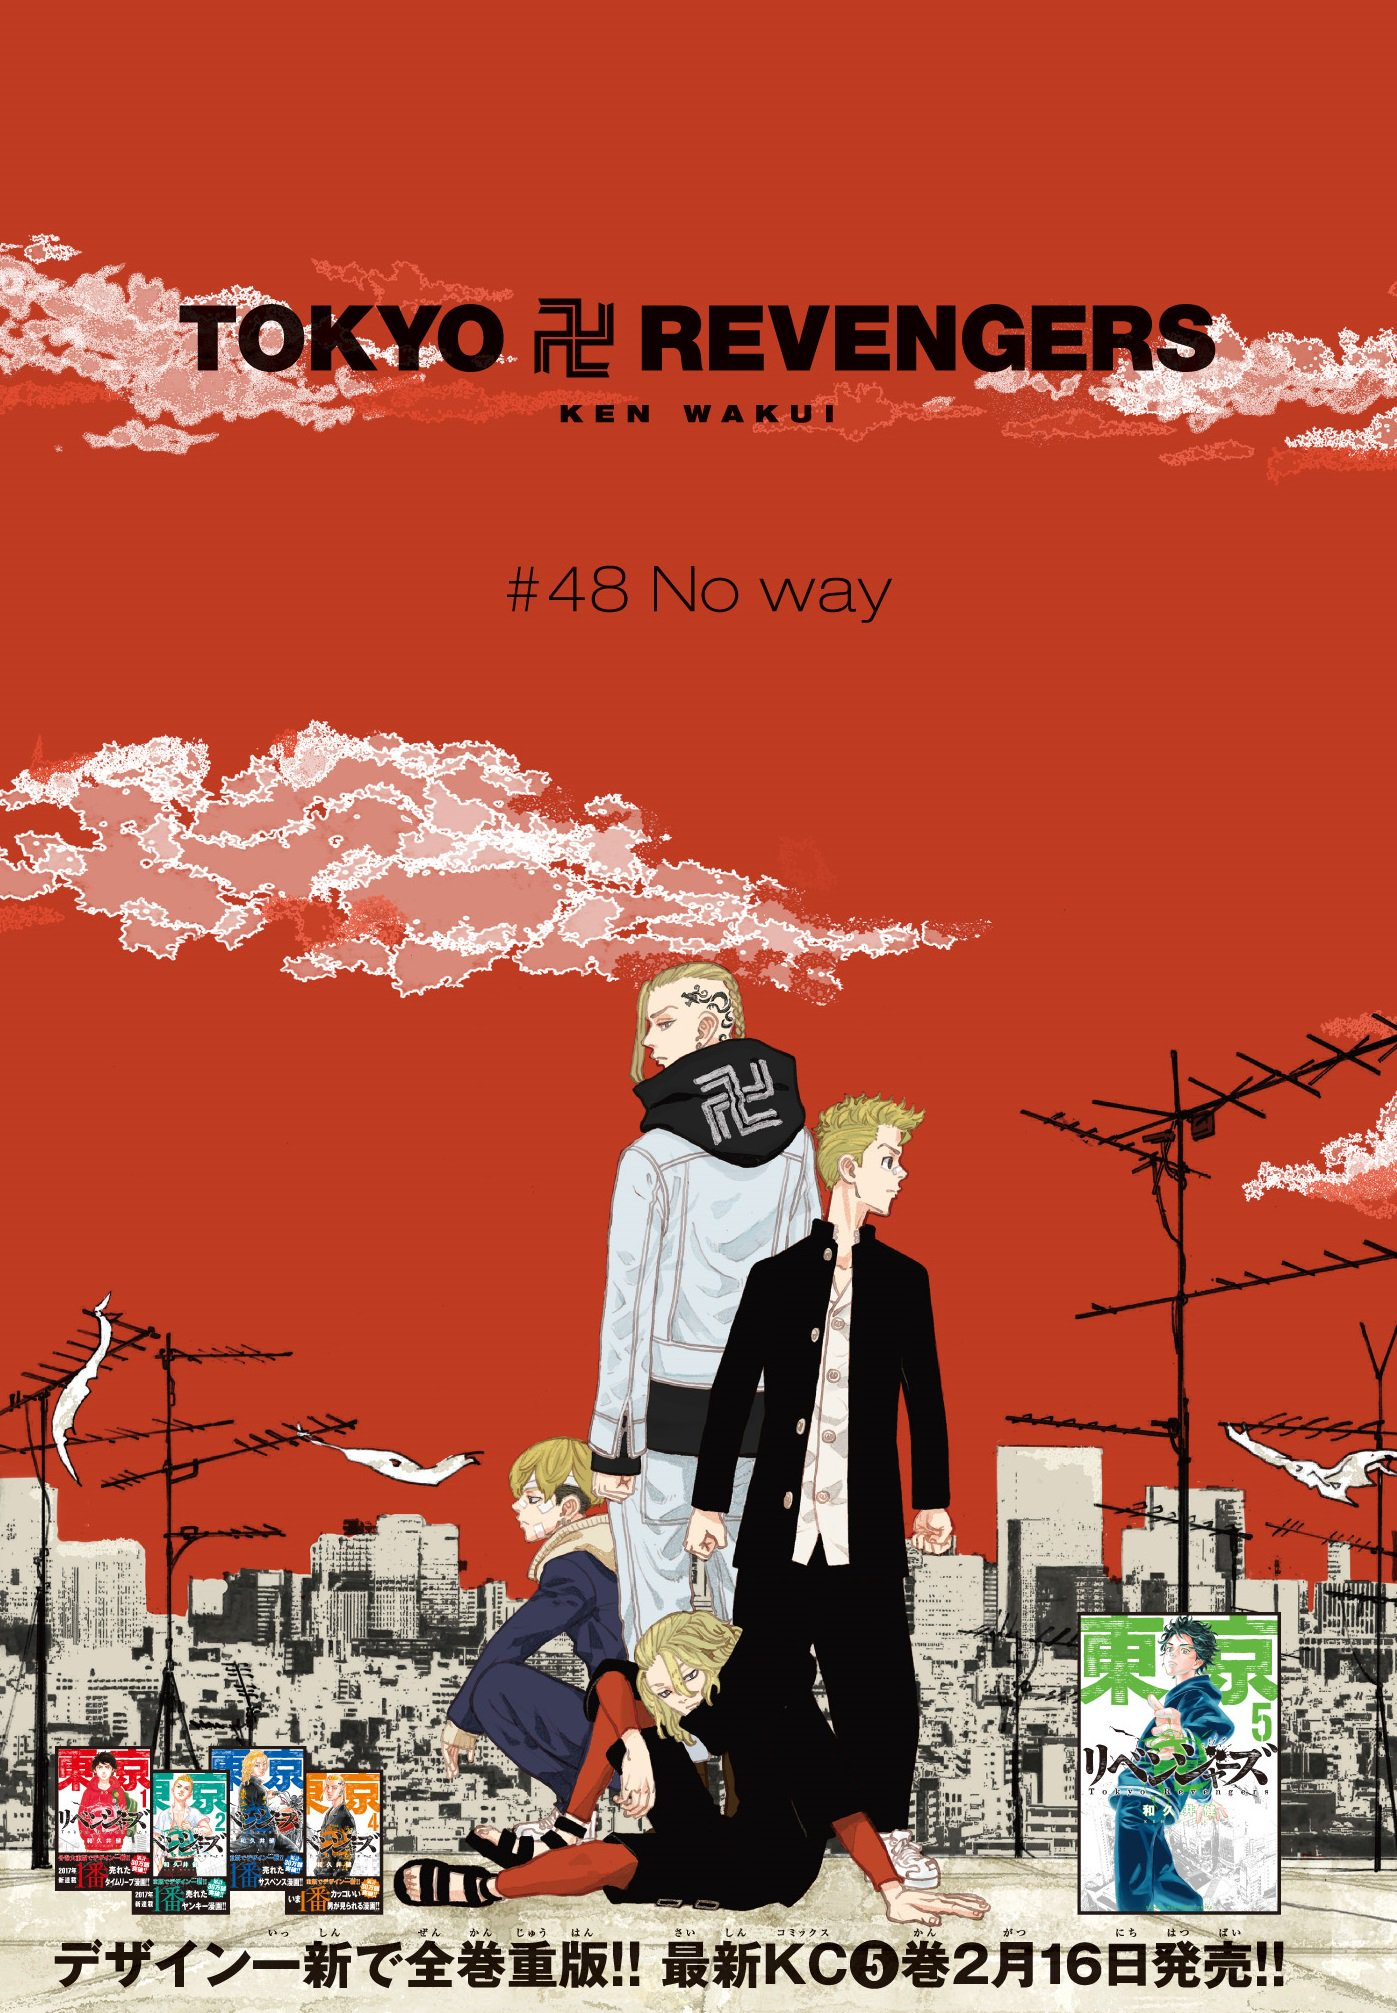 Episode 19, Tokyo Revengers Wiki